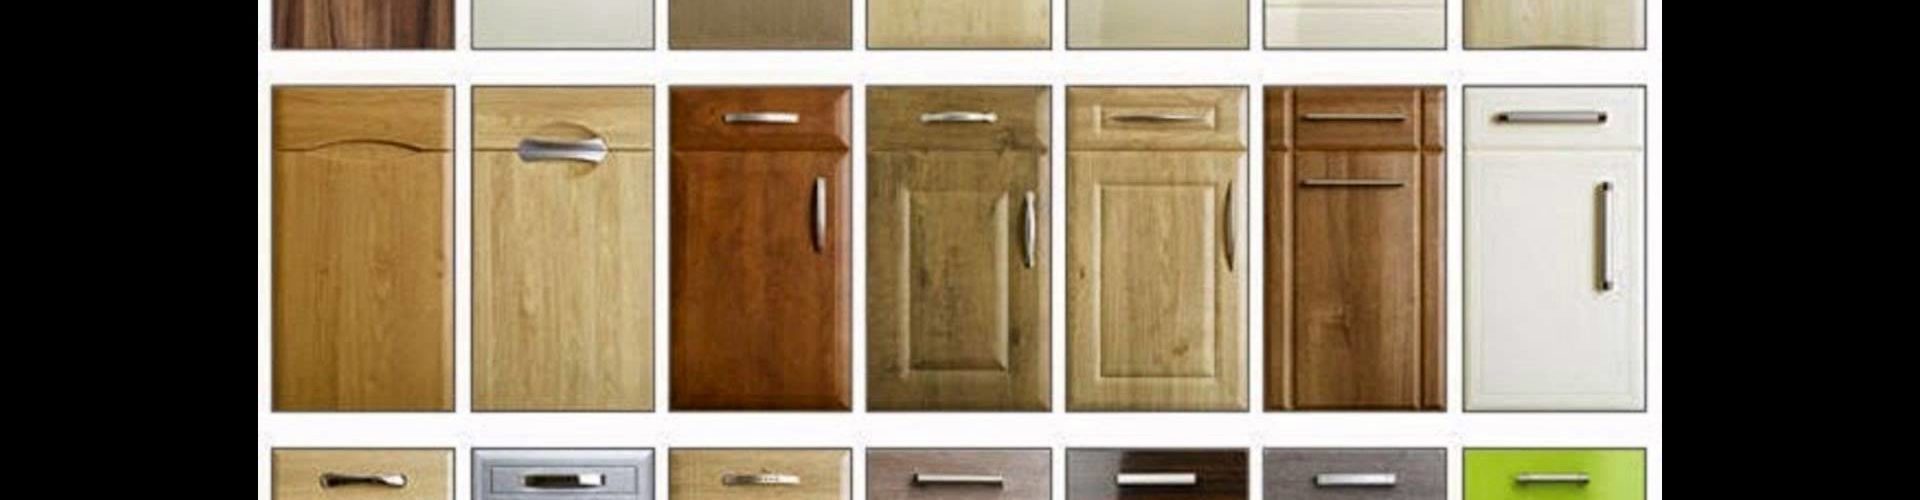 Kitchen Cupboard Doors – The Housing Forum